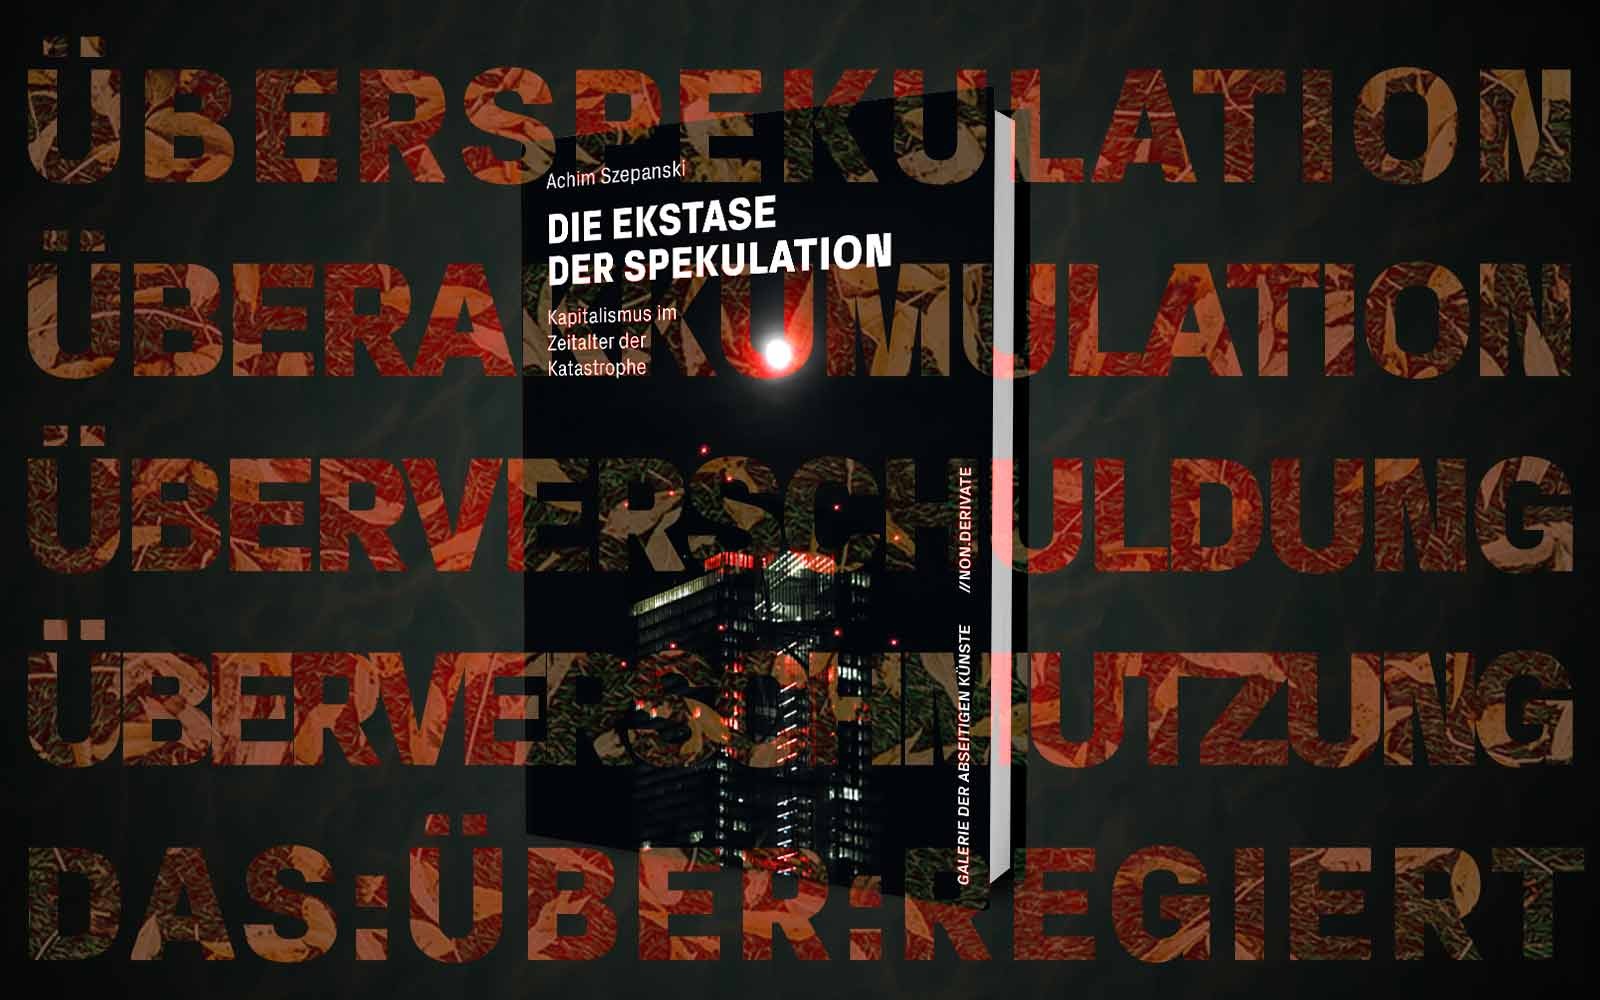 Bild des Buches: "Ekstase der Spekulation", Text: "Überspekulation Überakkumulation Überverschuldung Überverschmutzung Das:Über:regiert"